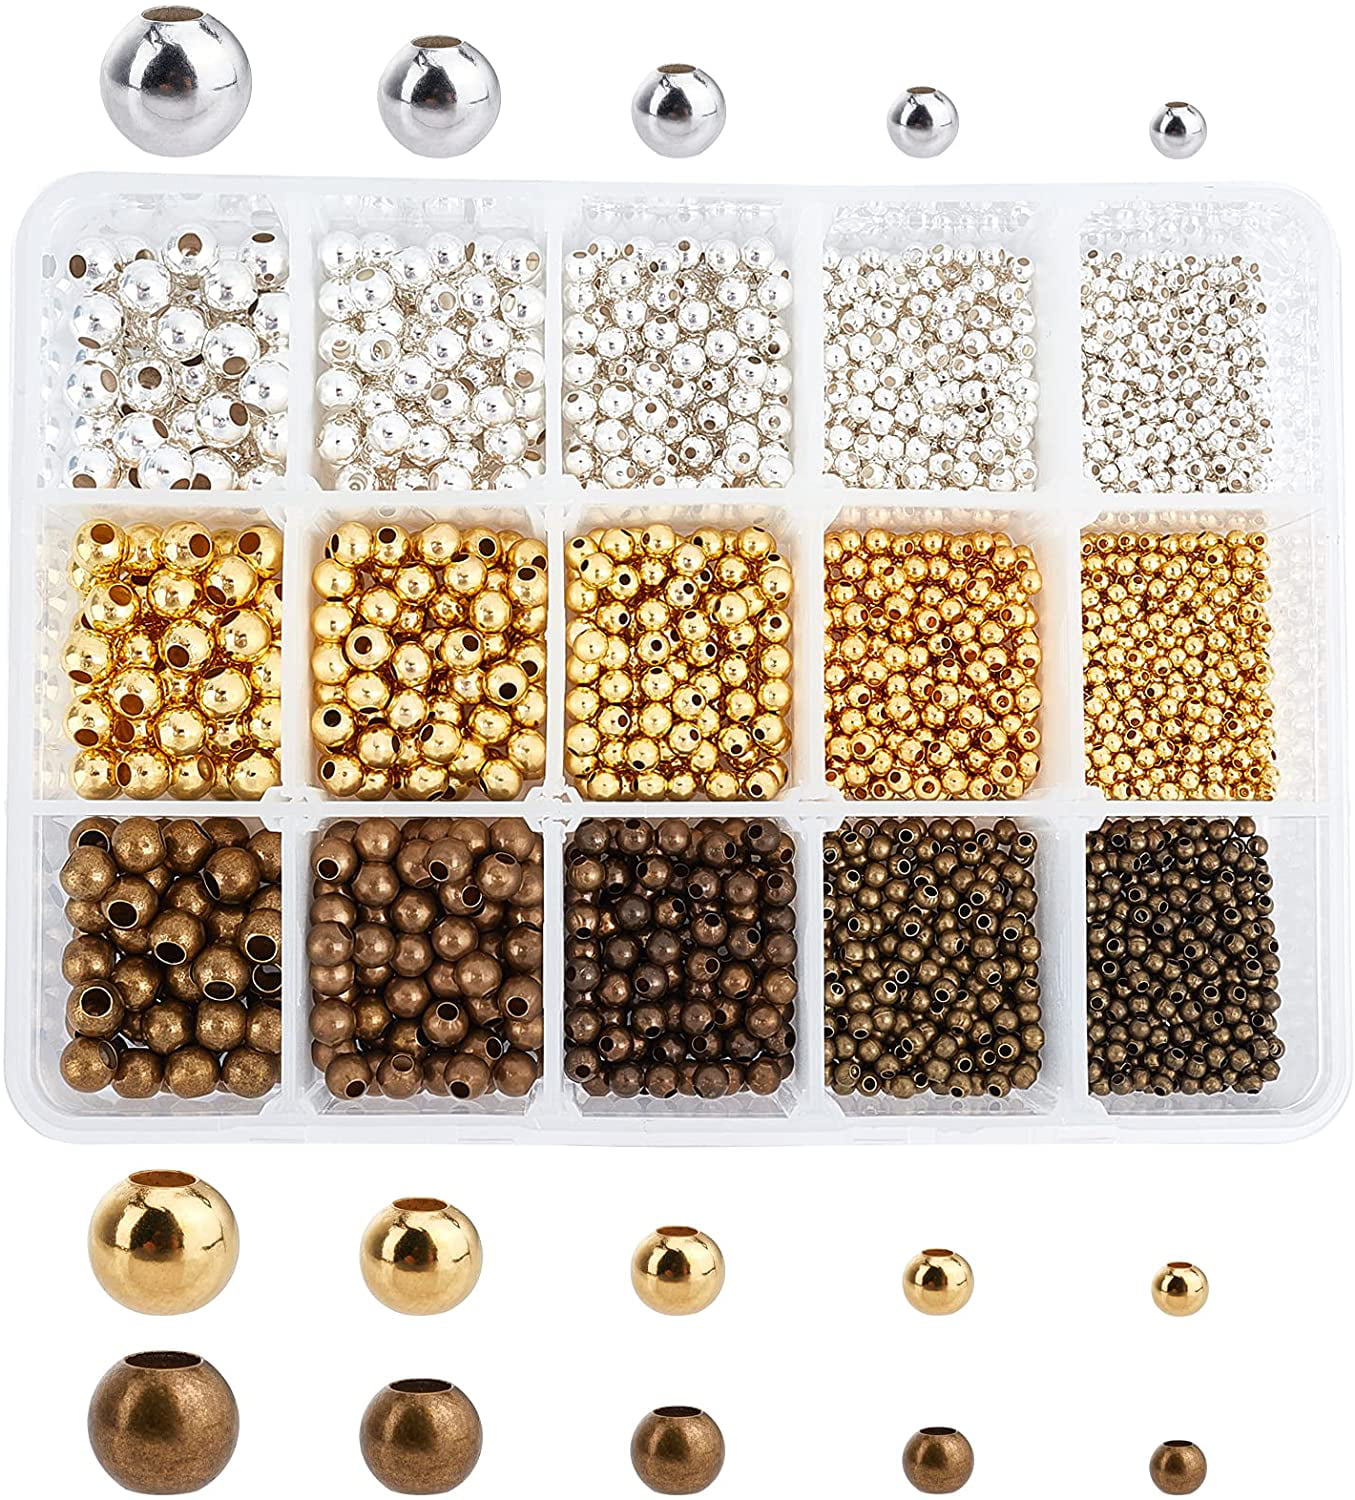 100-1000Pcs Tibetan Silver/Golden/Bronze Daisy Spacer Beads Findings 4/6mm 